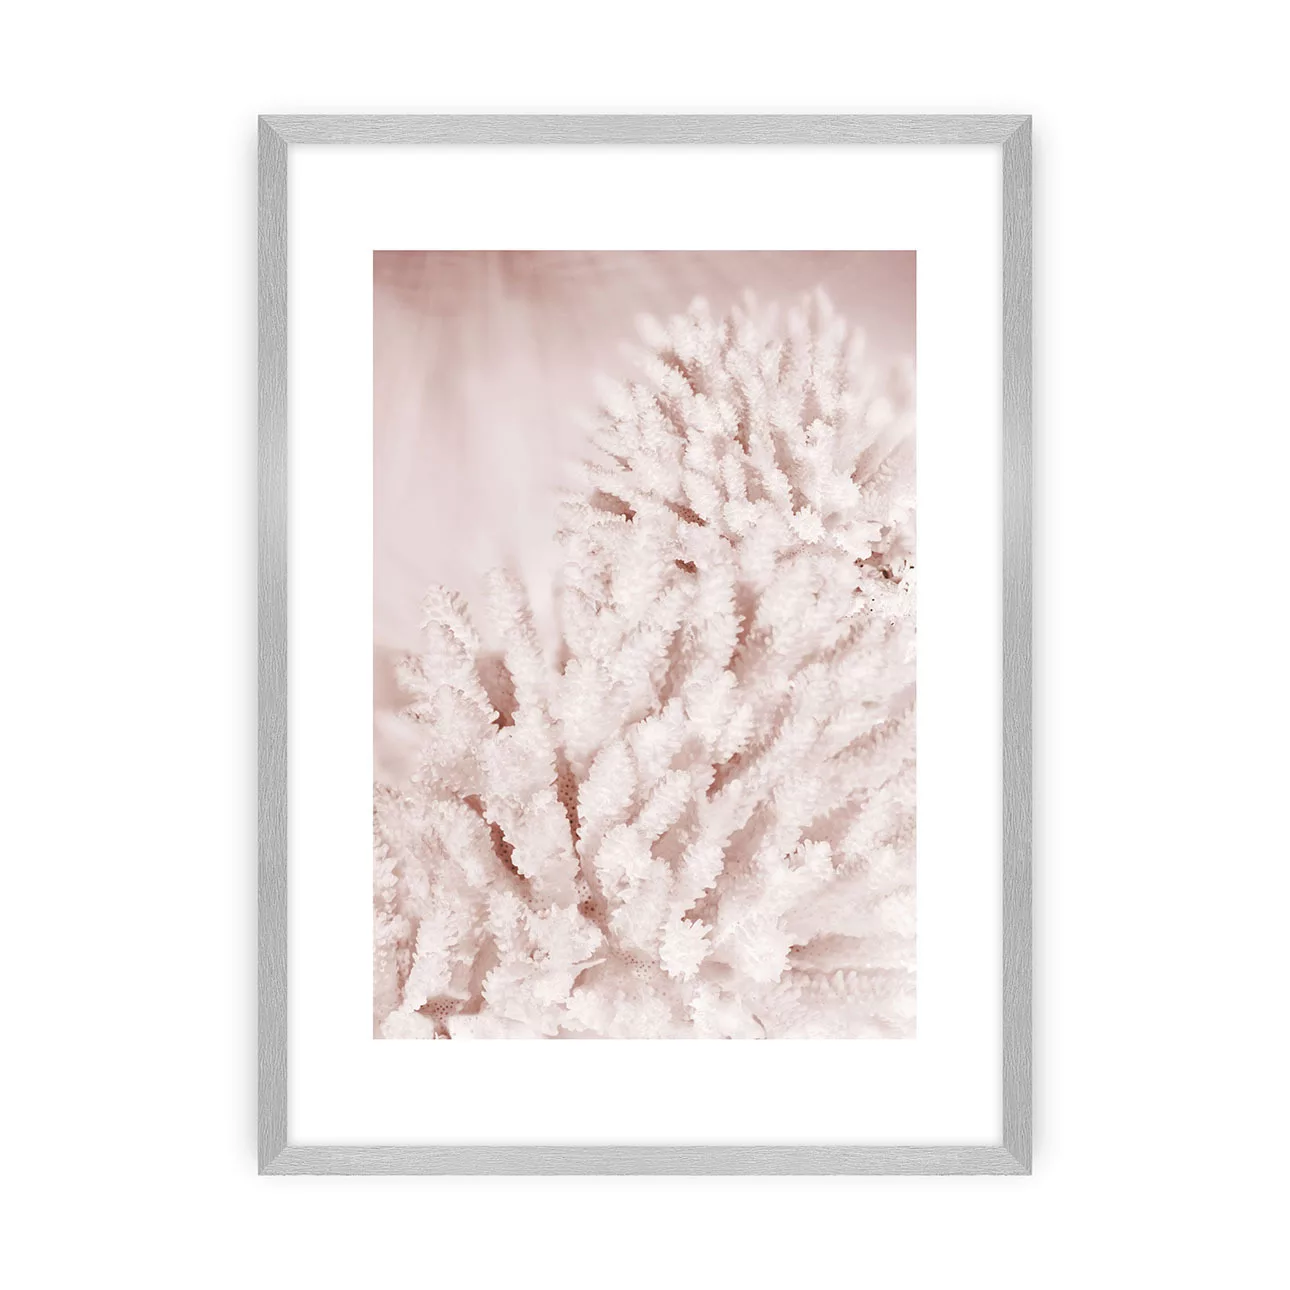 Poster Pastel Pink II, 30 x 40 cm, Rahmen wählen: silberner Rahmen günstig online kaufen